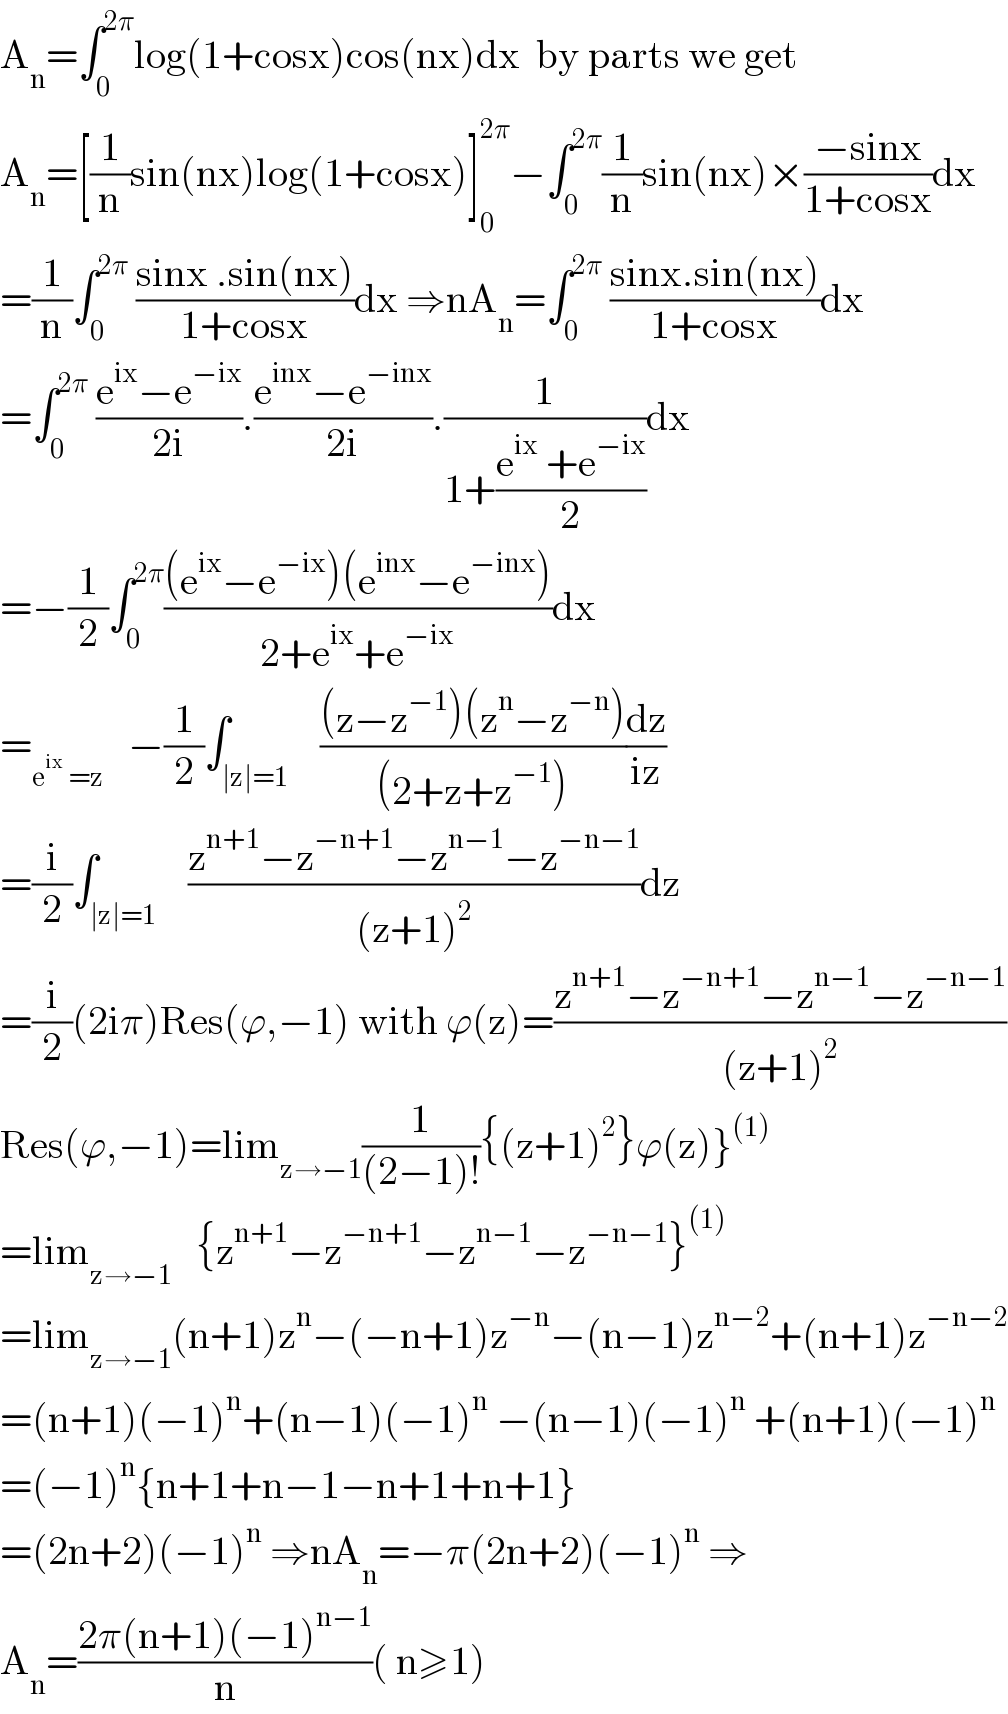 A_n =∫_0 ^(2π) log(1+cosx)cos(nx)dx  by parts we get  A_n =[(1/n)sin(nx)log(1+cosx)]_0 ^(2π) −∫_0 ^(2π) (1/n)sin(nx)×((−sinx)/(1+cosx))dx  =(1/n)∫_0 ^(2π)  ((sinx .sin(nx))/(1+cosx))dx ⇒nA_n =∫_0 ^(2π)  ((sinx.sin(nx))/(1+cosx))dx  =∫_0 ^(2π)  ((e^(ix) −e^(−ix) )/(2i)).((e^(inx) −e^(−inx) )/(2i)).(1/(1+((e^(ix)  +e^(−ix) )/2)))dx  =−(1/2)∫_0 ^(2π) (((e^(ix) −e^(−ix) )(e^(inx) −e^(−inx) ))/(2+e^(ix) +e^(−ix) ))dx  =_(e^(ix)  =z)    −(1/2)∫_(∣z∣=1)    (((z−z^(−1) )(z^n −z^(−n) ))/((2+z+z^(−1) )))(dz/(iz))  =(i/2)∫_(∣z∣=1)    ((z^(n+1) −z^(−n+1) −z^(n−1) −z^(−n−1) )/((z+1)^2 ))dz  =(i/2)(2iπ)Res(ϕ,−1) with ϕ(z)=((z^(n+1) −z^(−n+1) −z^(n−1) −z^(−n−1) )/((z+1)^2 ))  Res(ϕ,−1)=lim_(z→−1) (1/((2−1)!)){(z+1)^2 }ϕ(z)}^((1))   =lim_(z→−1)    {z^(n+1) −z^(−n+1) −z^(n−1) −z^(−n−1) }^((1))   =lim_(z→−1) (n+1)z^n −(−n+1)z^(−n) −(n−1)z^(n−2) +(n+1)z^(−n−2)   =(n+1)(−1)^n +(n−1)(−1)^n  −(n−1)(−1)^n  +(n+1)(−1)^n   =(−1)^n {n+1+n−1−n+1+n+1}  =(2n+2)(−1)^n  ⇒nA_n =−π(2n+2)(−1)^n  ⇒  A_n =((2π(n+1)(−1)^(n−1) )/n)( n≥1)  